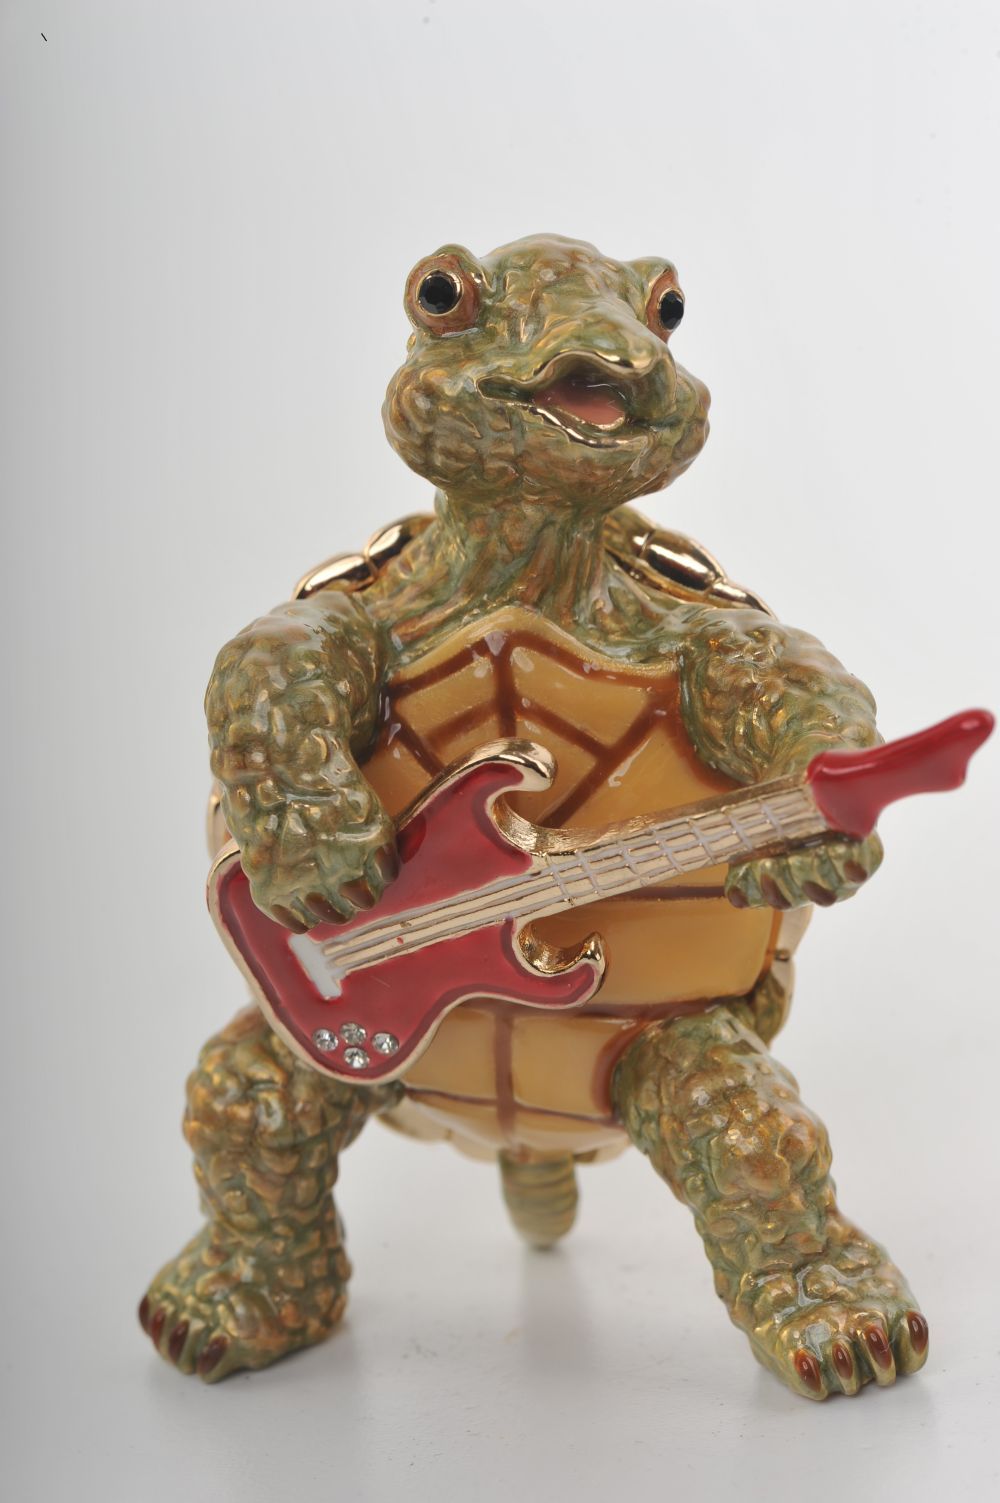 Keren Kopal Turtle Playing the Guitar  78.75